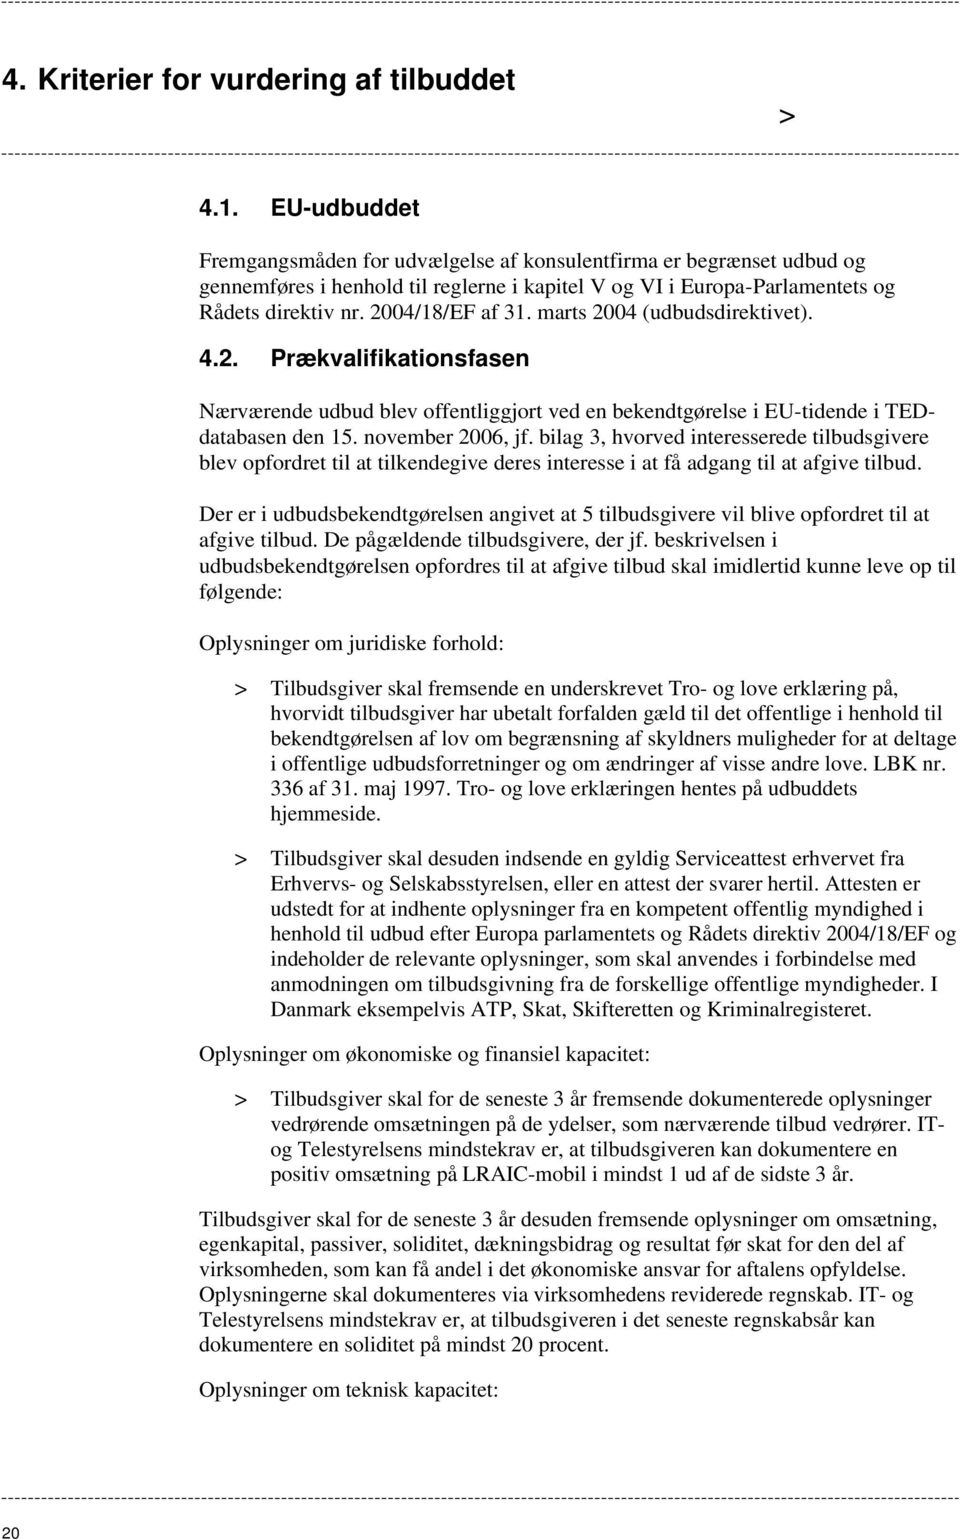 marts 2004 (udbudsdirektivet). 4.2. Prækvalifikationsfasen Nærværende udbud blev offentliggjort ved en bekendtgørelse i EU-tidende i TEDdatabasen den 15. november 2006, jf.